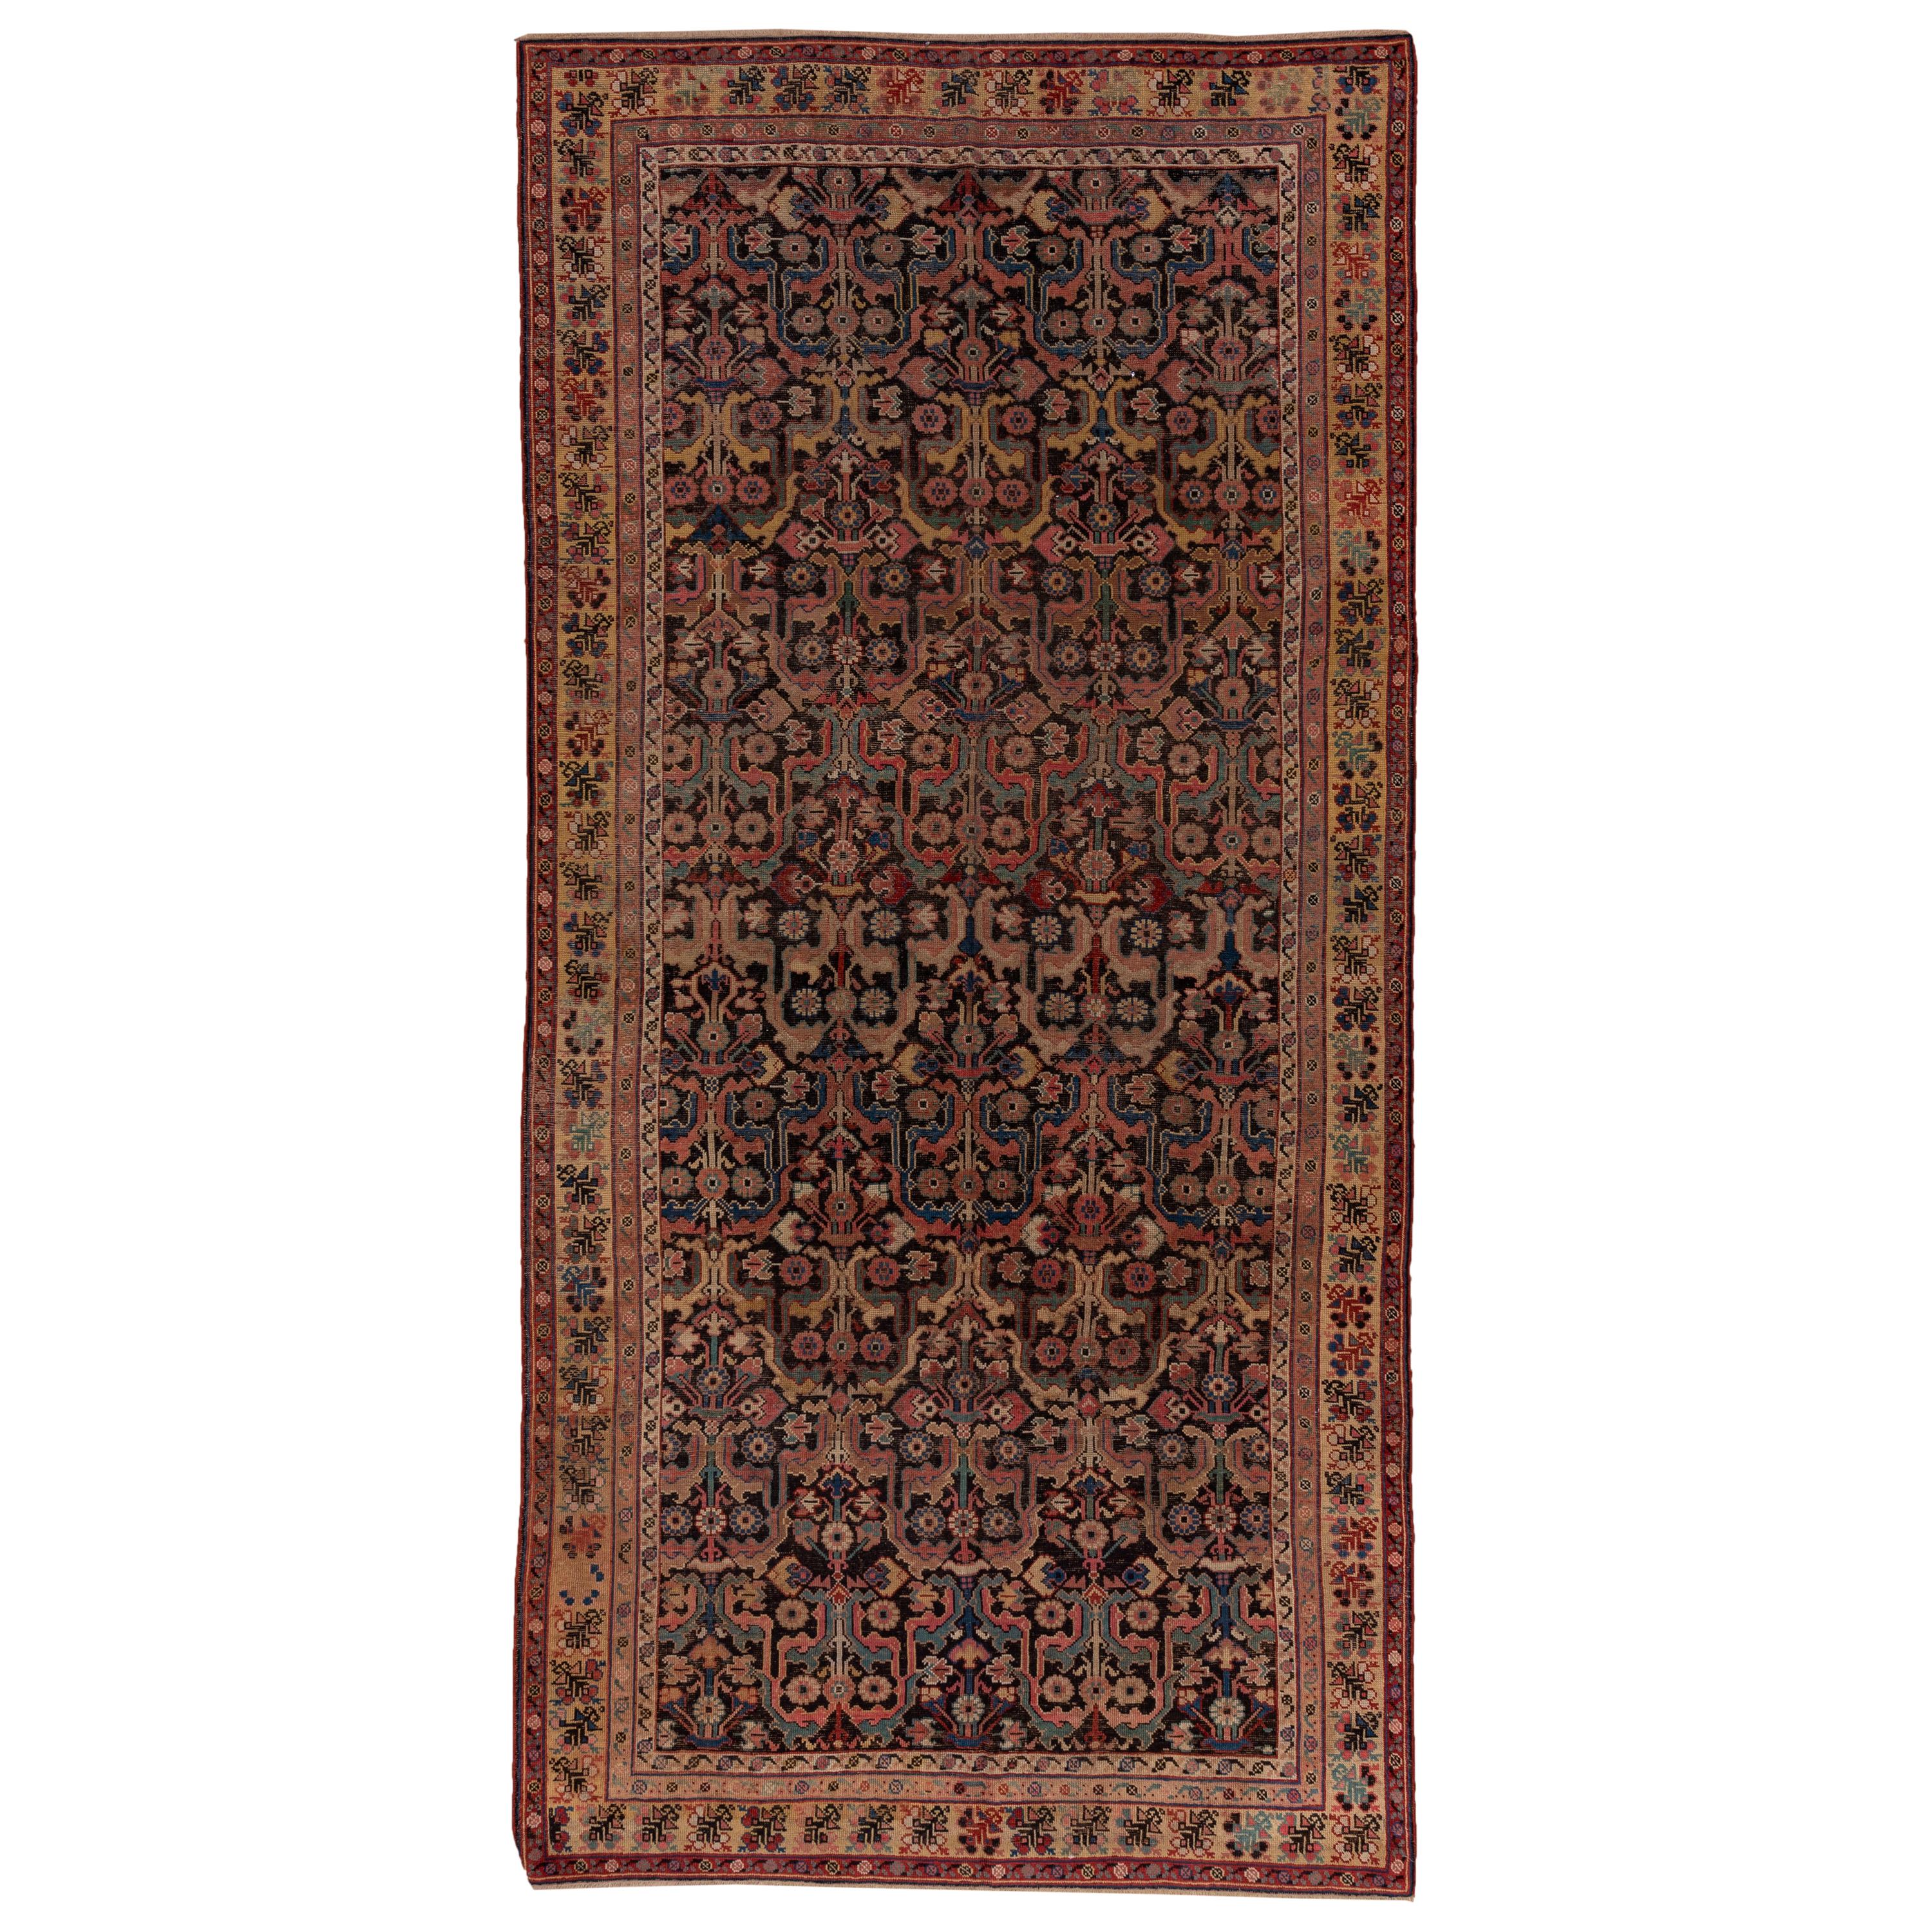 Bunter antiker kaukasischer Karabagh-Teppich mit Stammesmotiven, um 1900